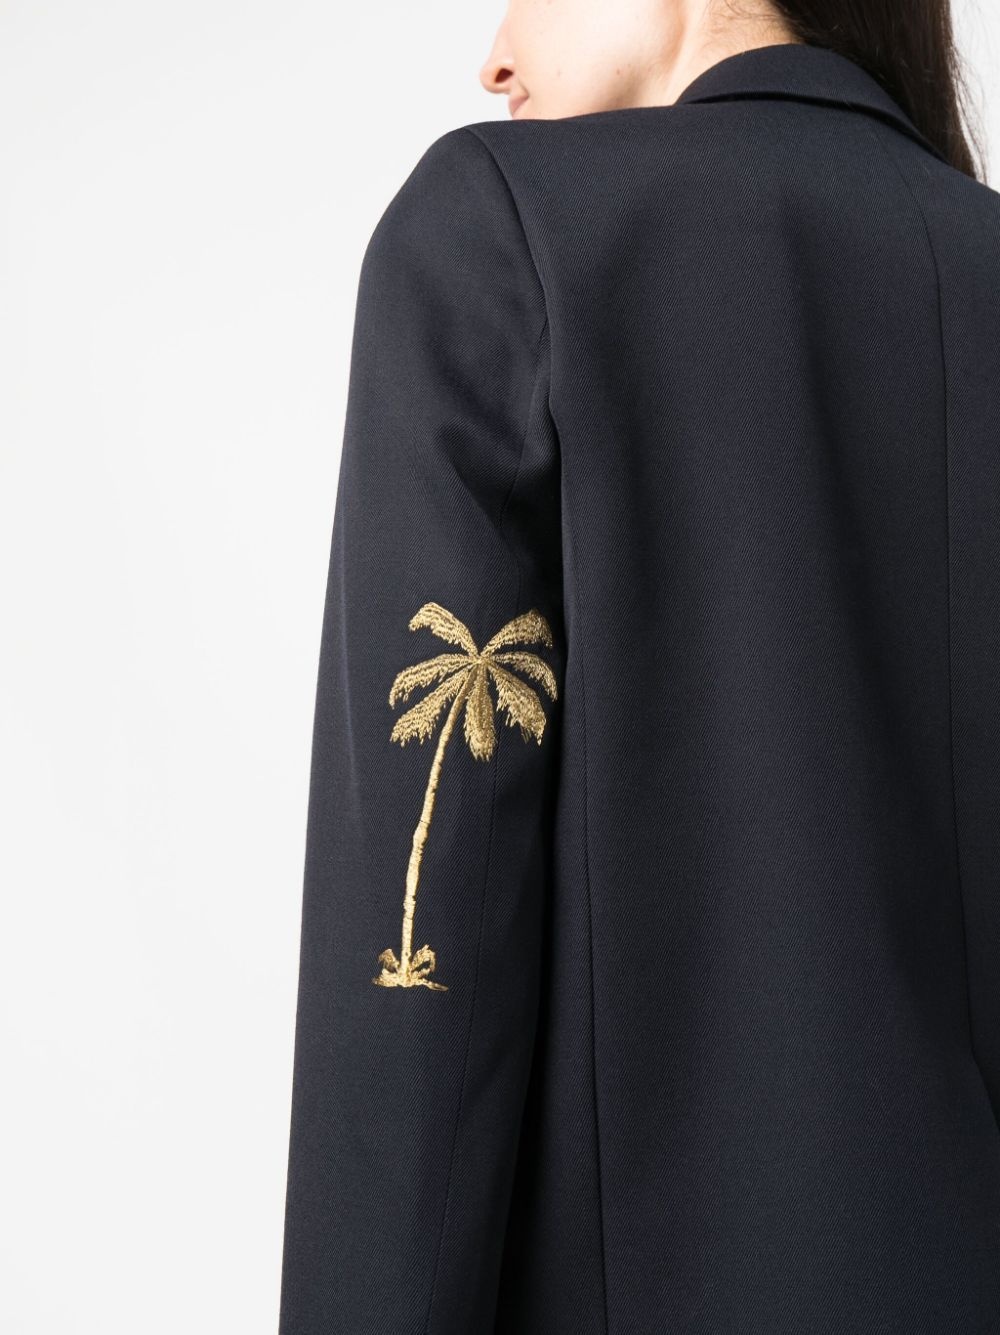 palm-embroidered blazer - 5